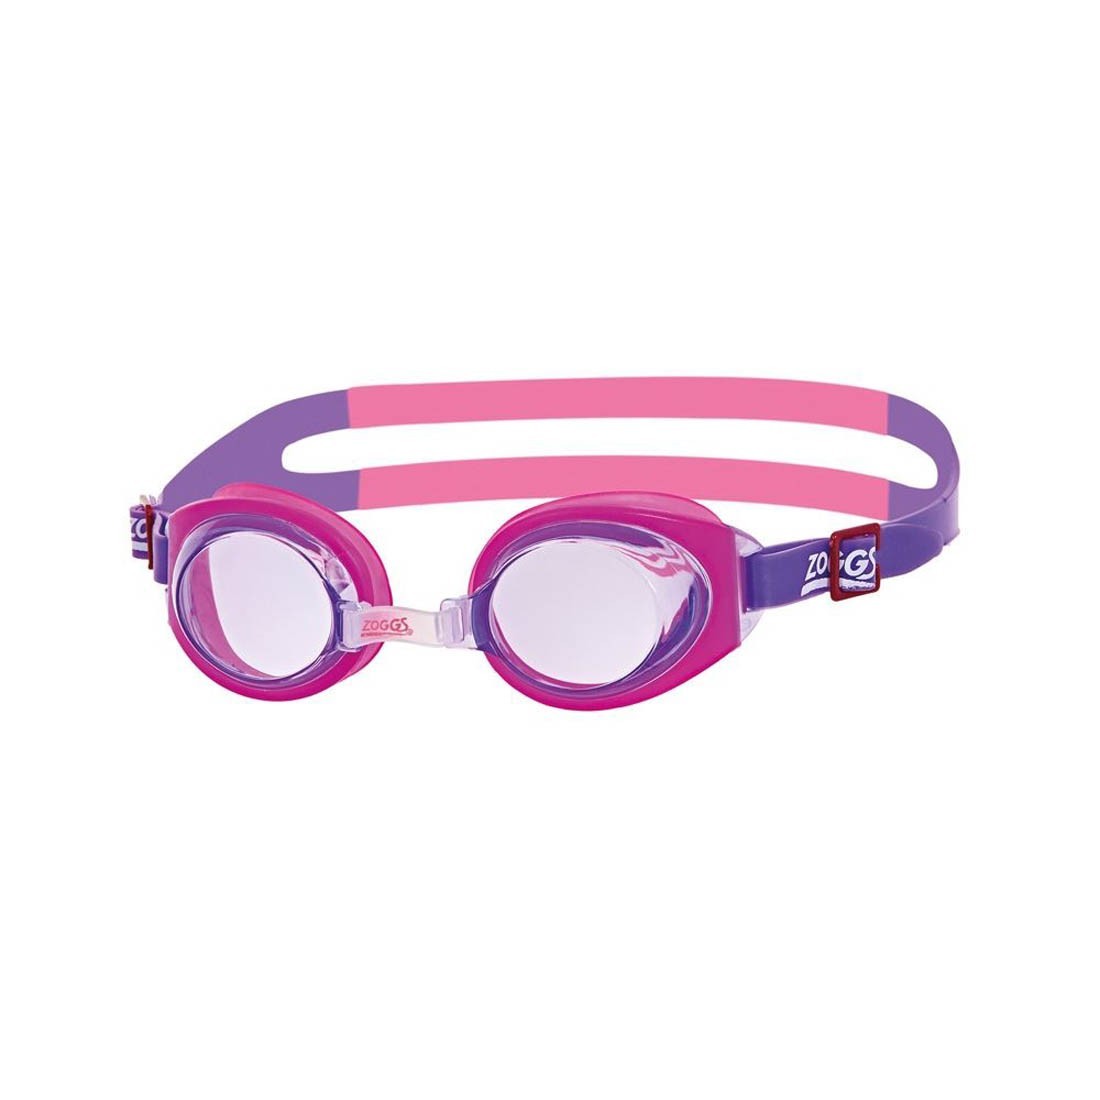 Zoggs Little Ripper 0-6 Jahre Kinder Schwimmen Brille UV Schutz AntiFog Kids 